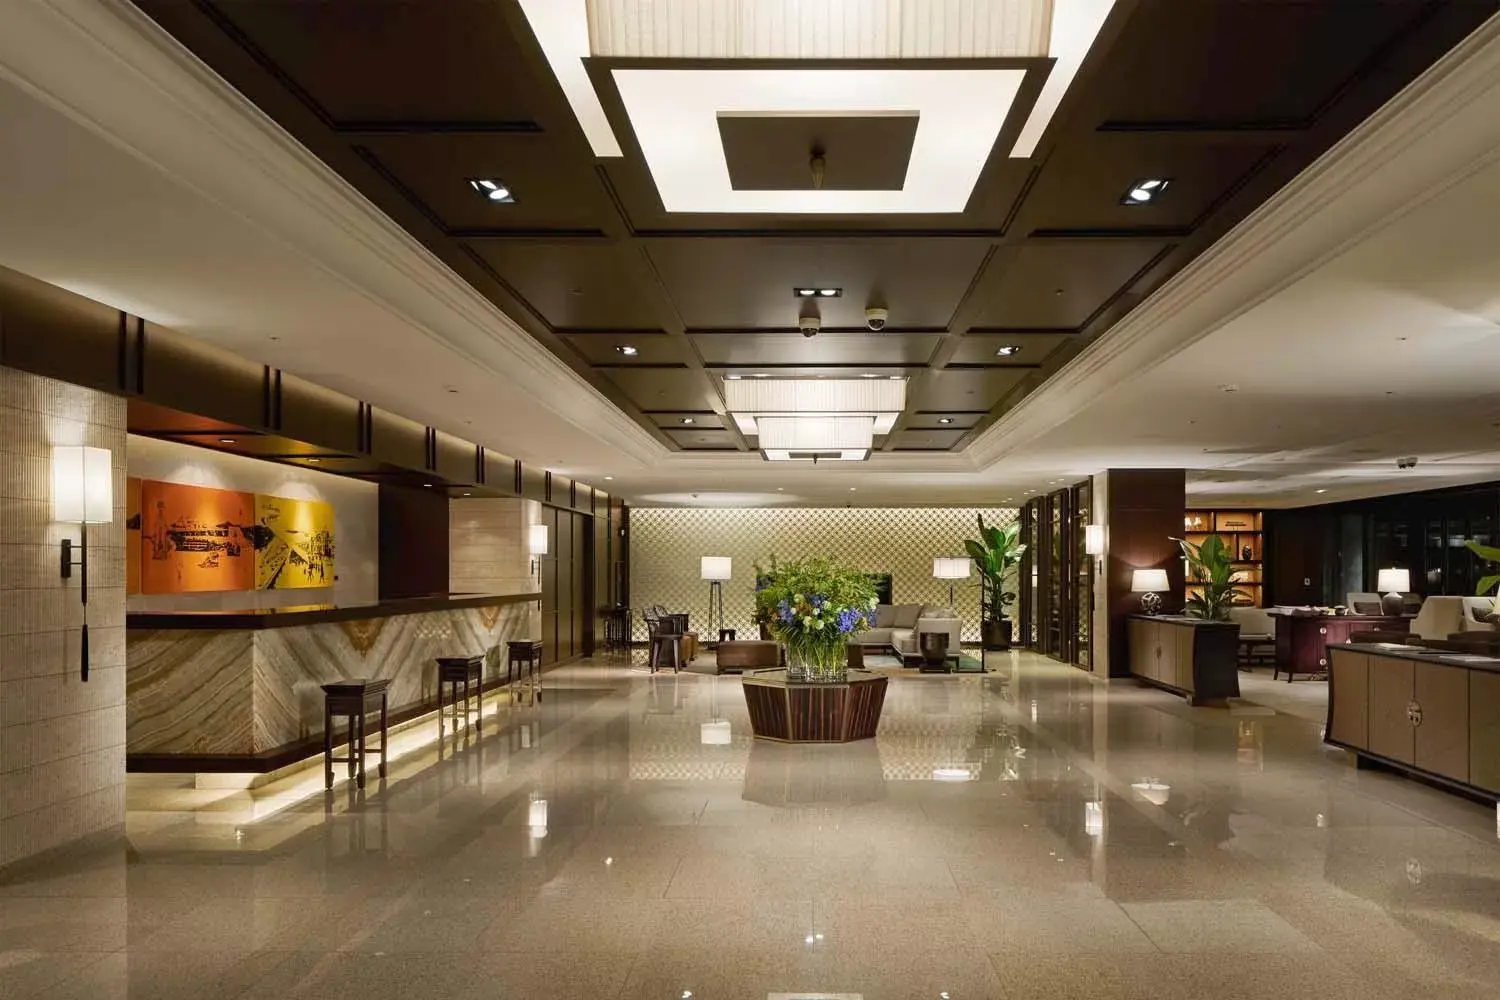 Lobby or reception, Lobby/Reception in Royal Hotel Seoul